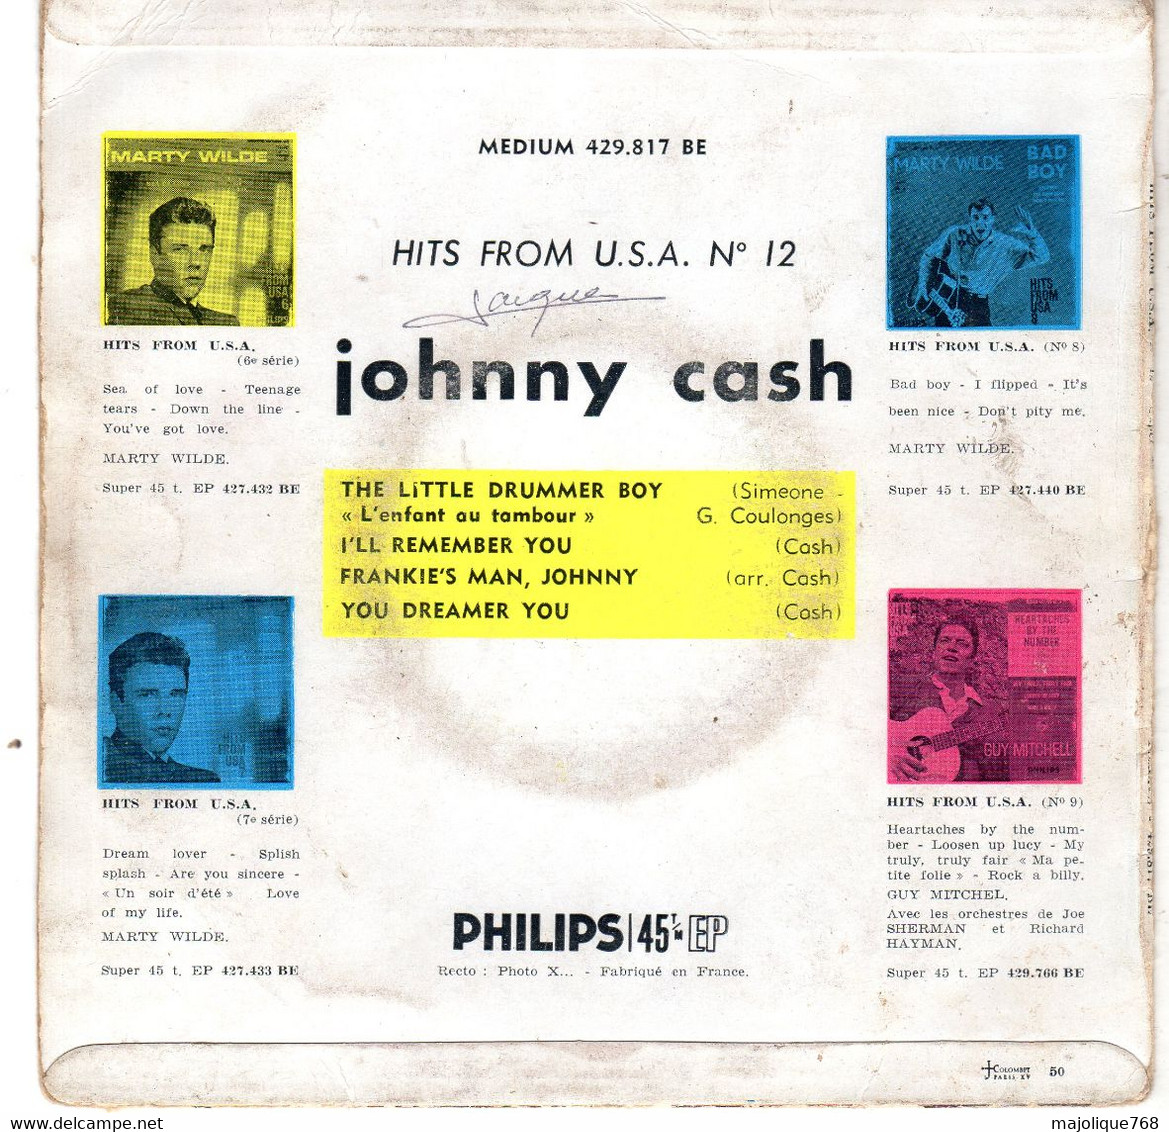 Disque De Johnny Cash - The Little Drummer Boy - Philips 429 817 BE - France 1960 - Country Et Folk